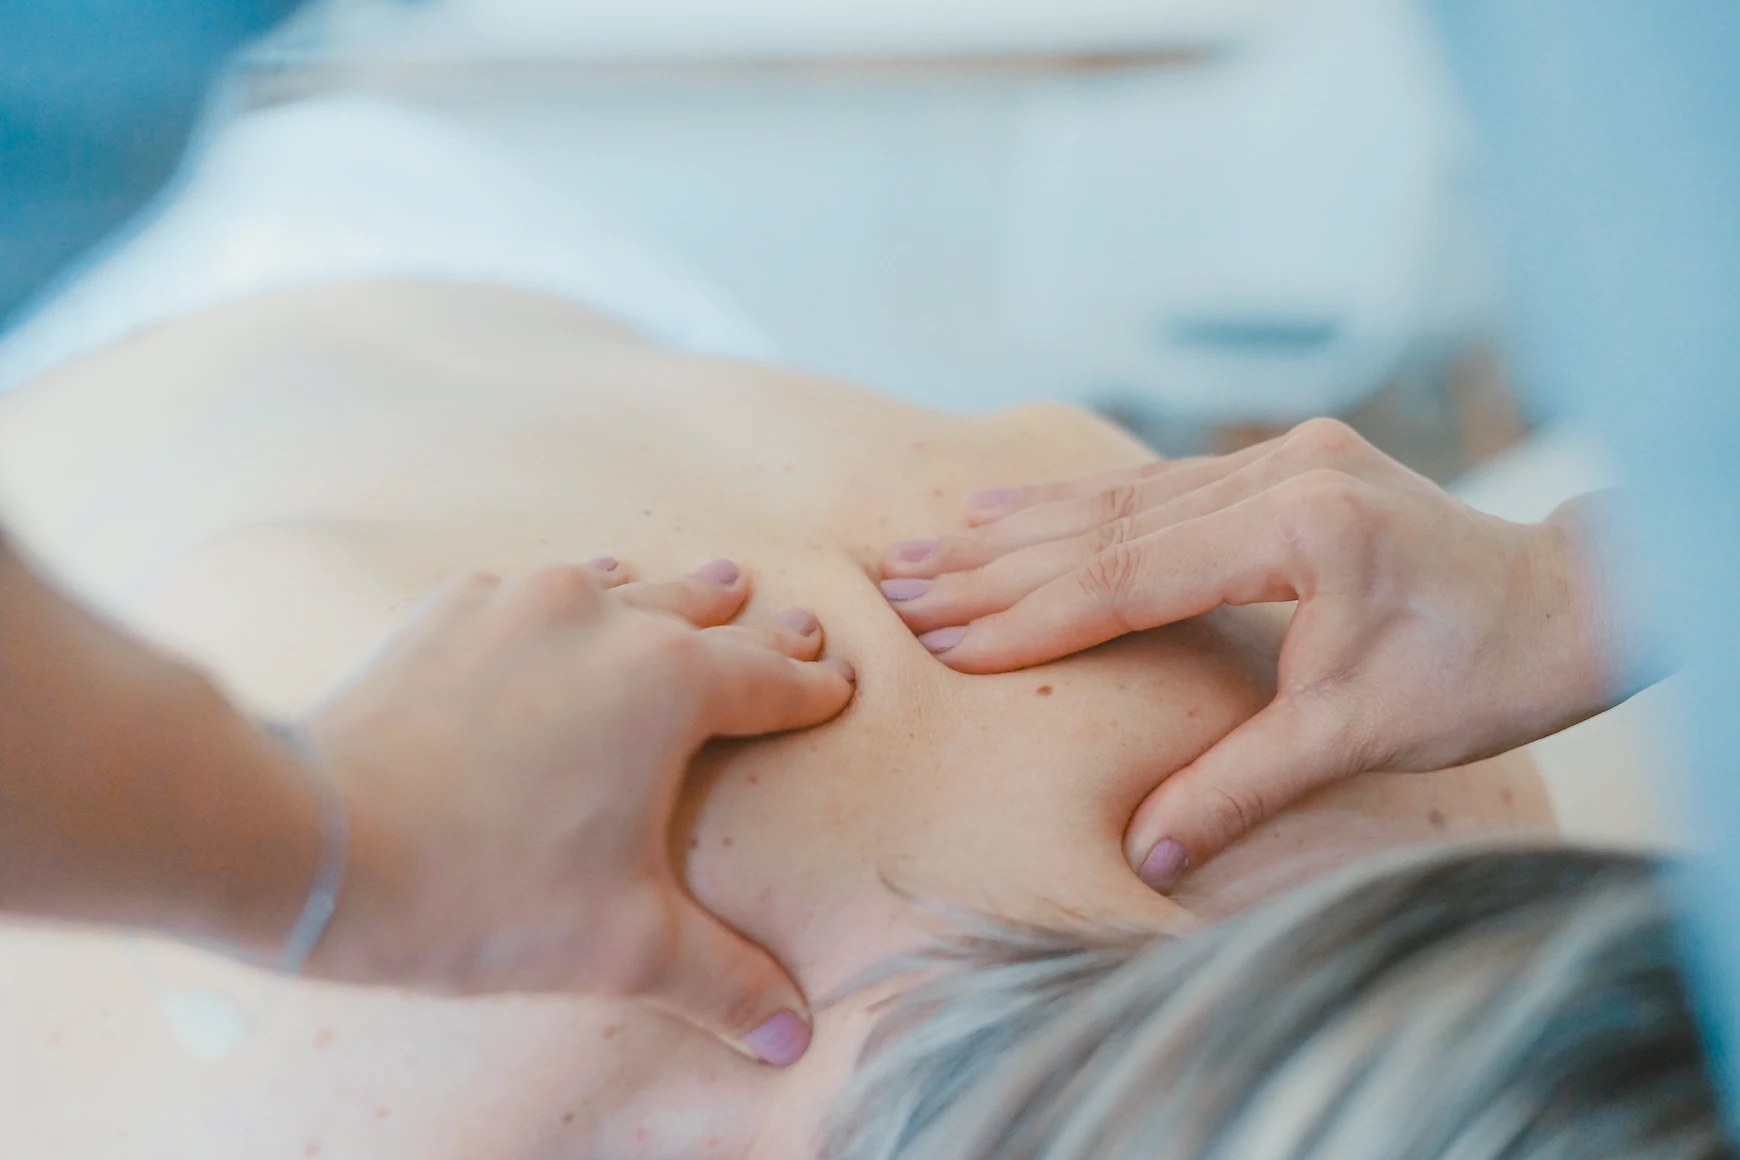 Deep tissue massage benefits